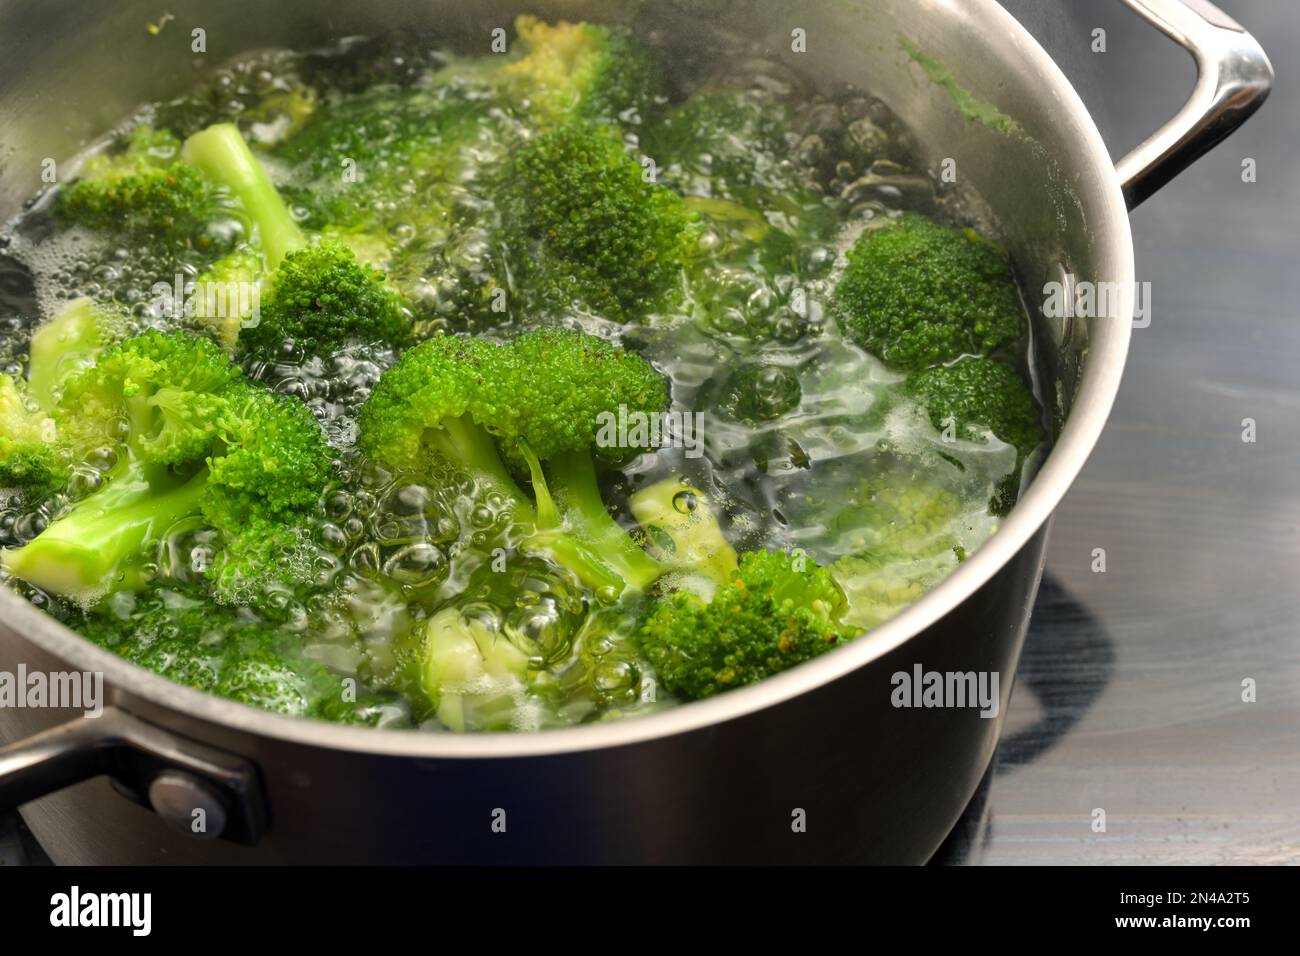 Le brocoli est blanchi dans l'eau bouillante dans un pot en acier inoxydable pour préserver la couleur verte fraîche, la cuisson saine avec les légumes, l'espace de copie, sélectionner Banque D'Images